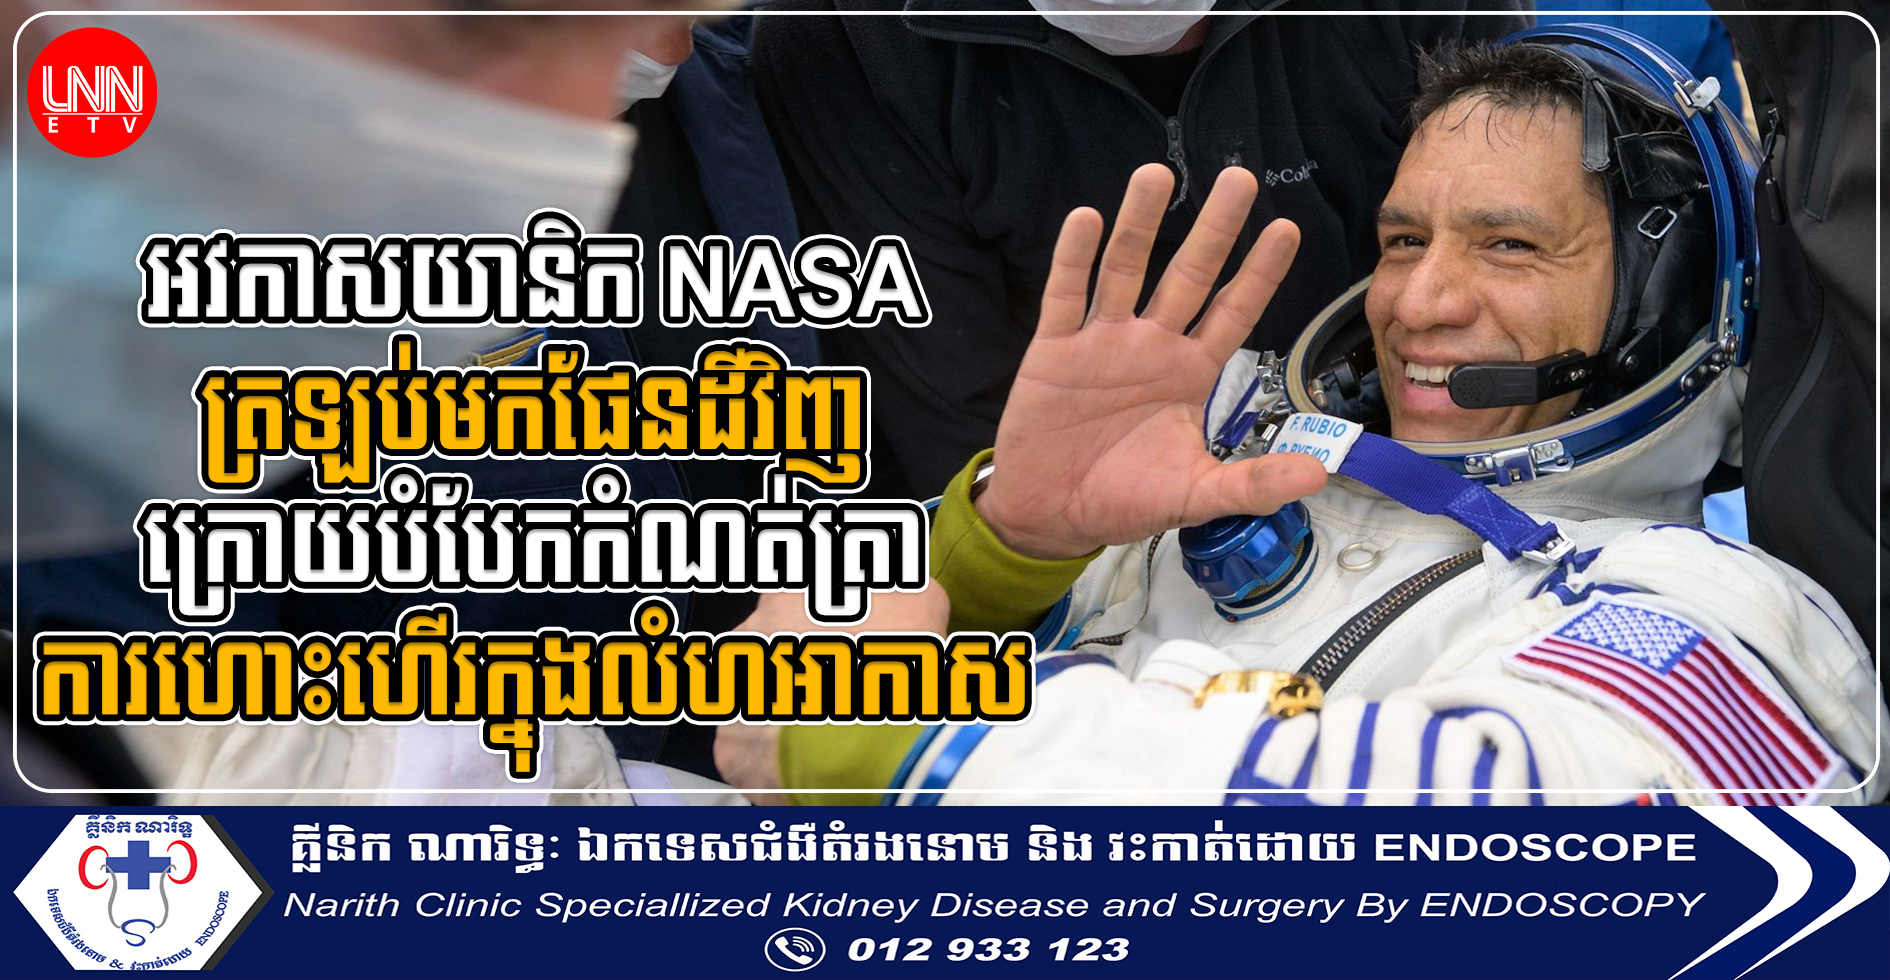 អវកាសយានិក NASA ត្រឡប់មកផែនដីវិញ ក្រោយបំបែកកំណត់ត្រាការហោះហើរក្នុងលំហអាកាស